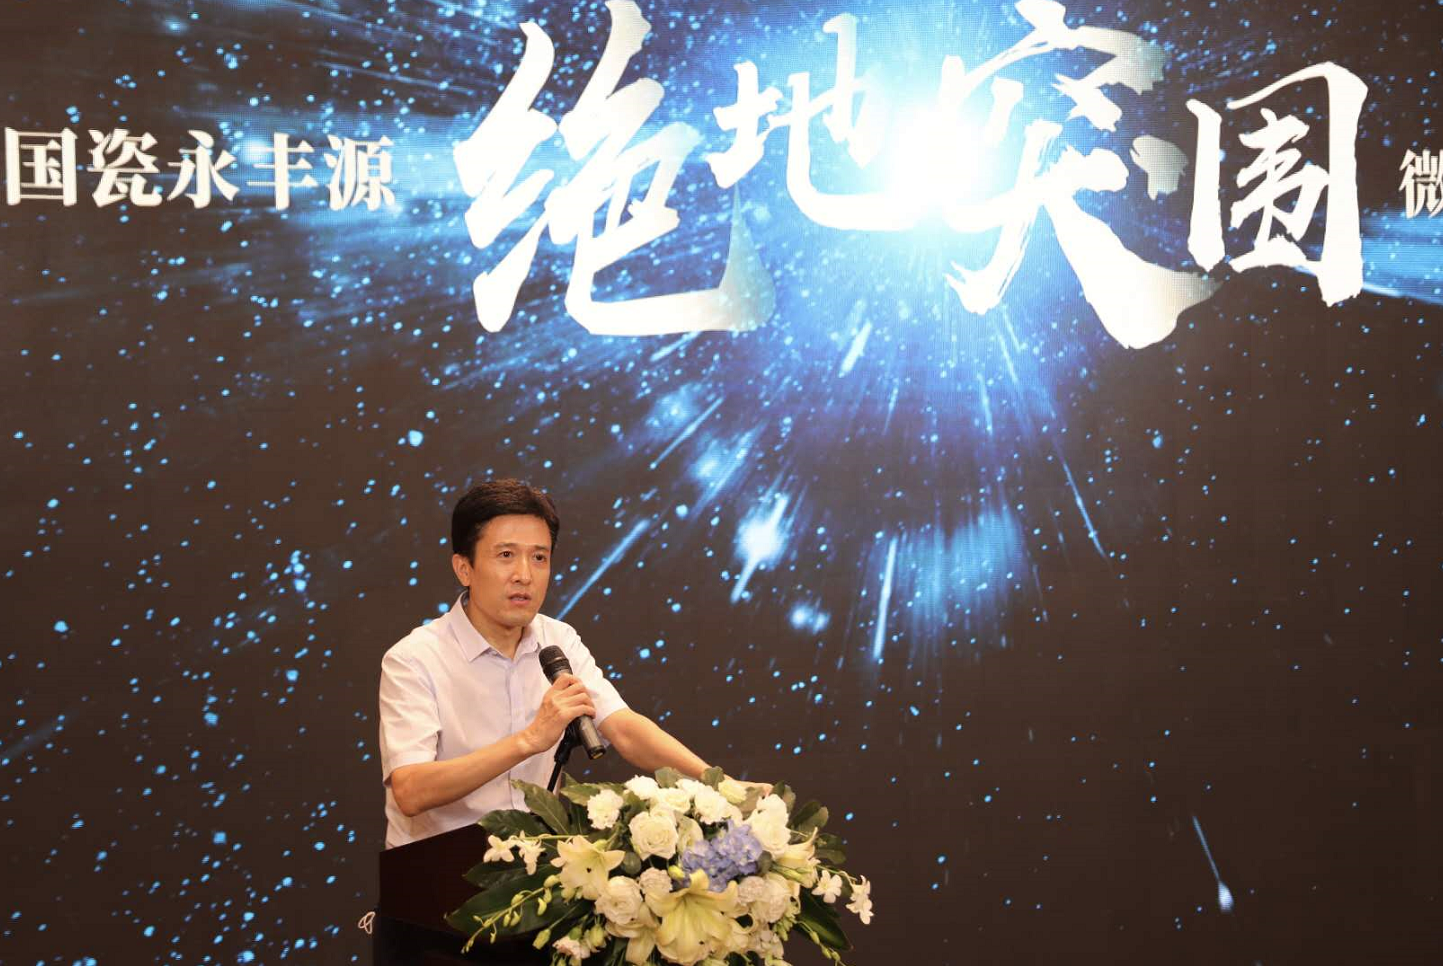 微电影《绝地突围》发布会3日在深圳举行